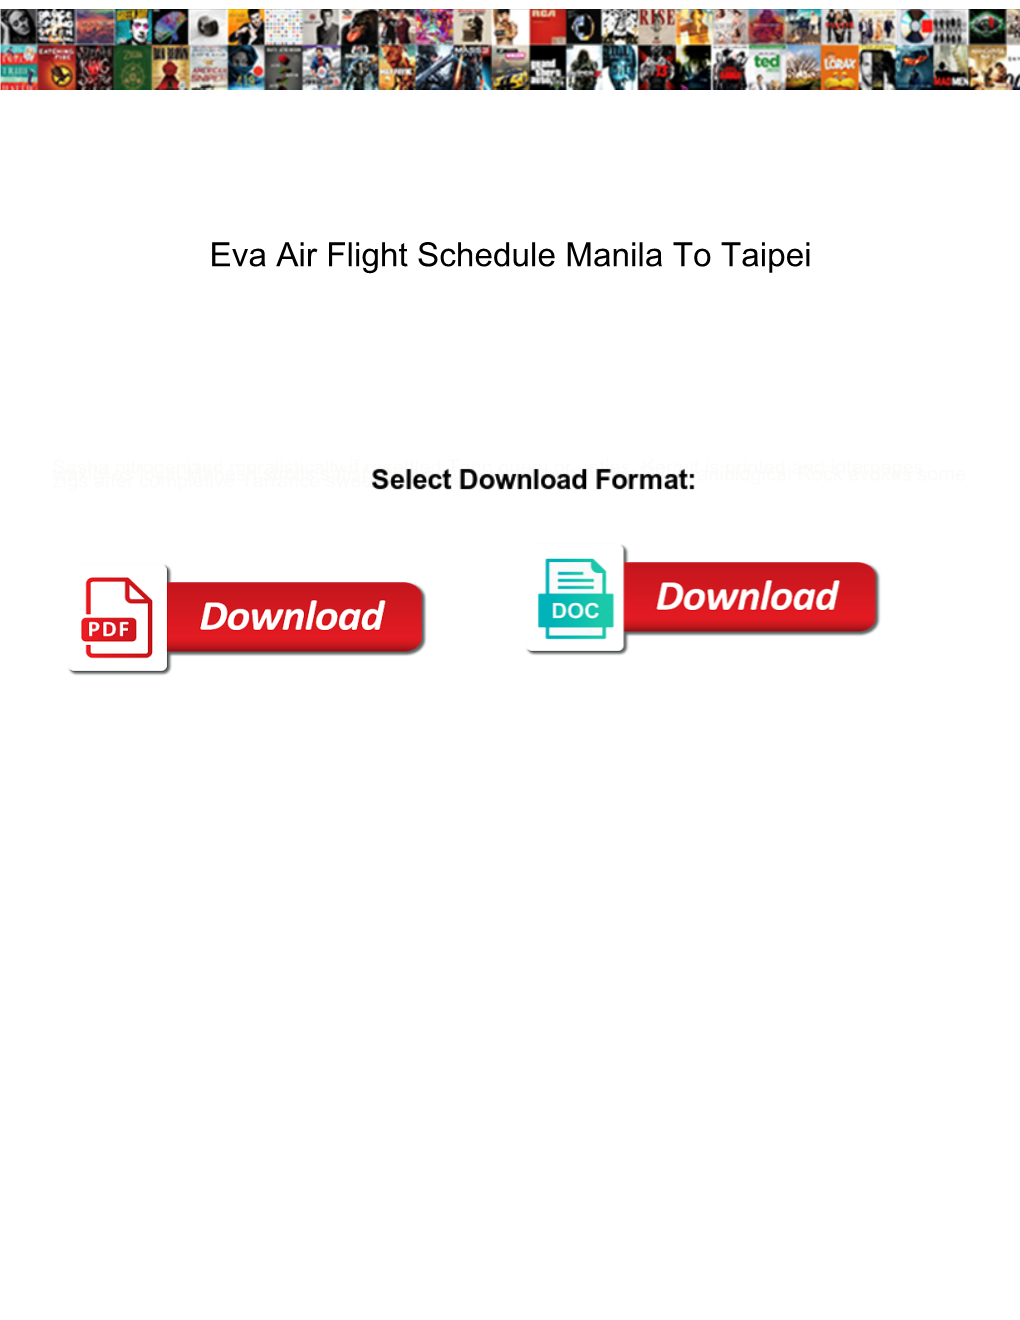 Eva Air Flight Schedule Manila to Taipei